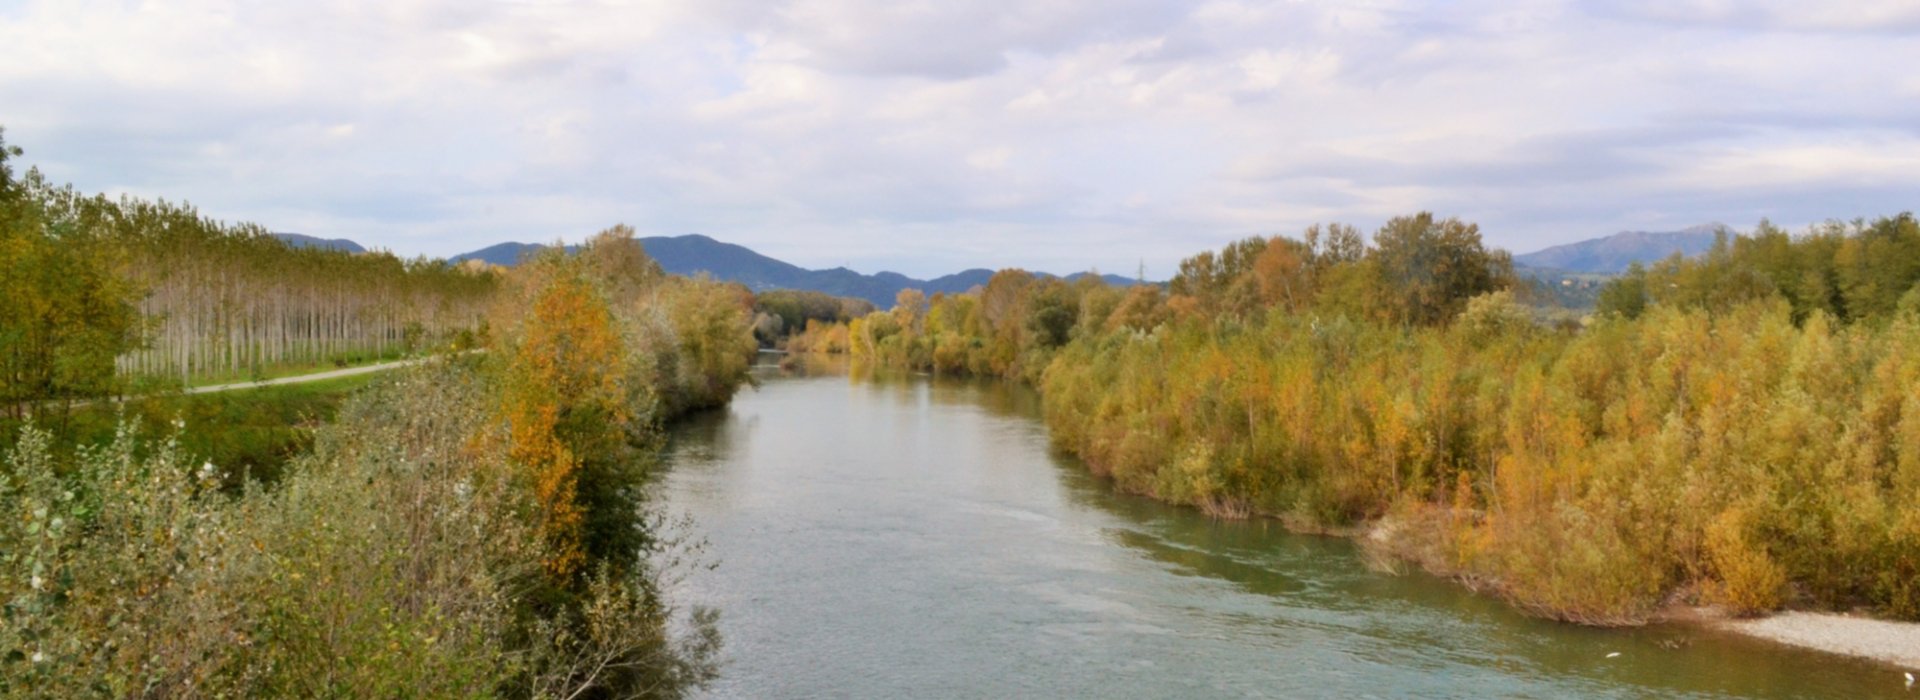 Trekking lungo il Serchio: un fiume di colori, Lucca